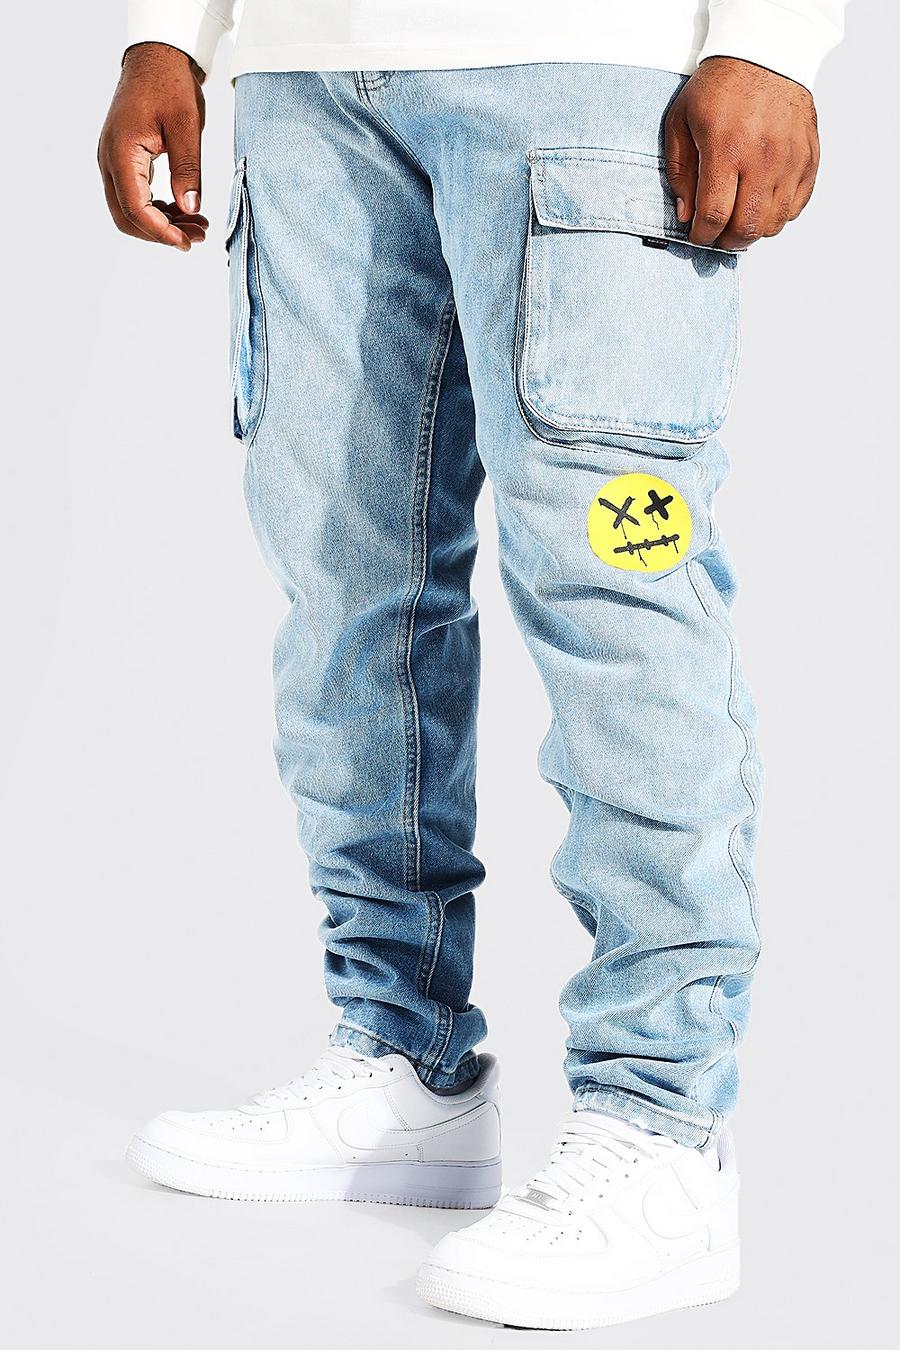 כחול קרח סקיני ג'ינס דגמ"ח מבד קשיח עם קצוות נערמים עם הדפס למידות גדולות image number 1